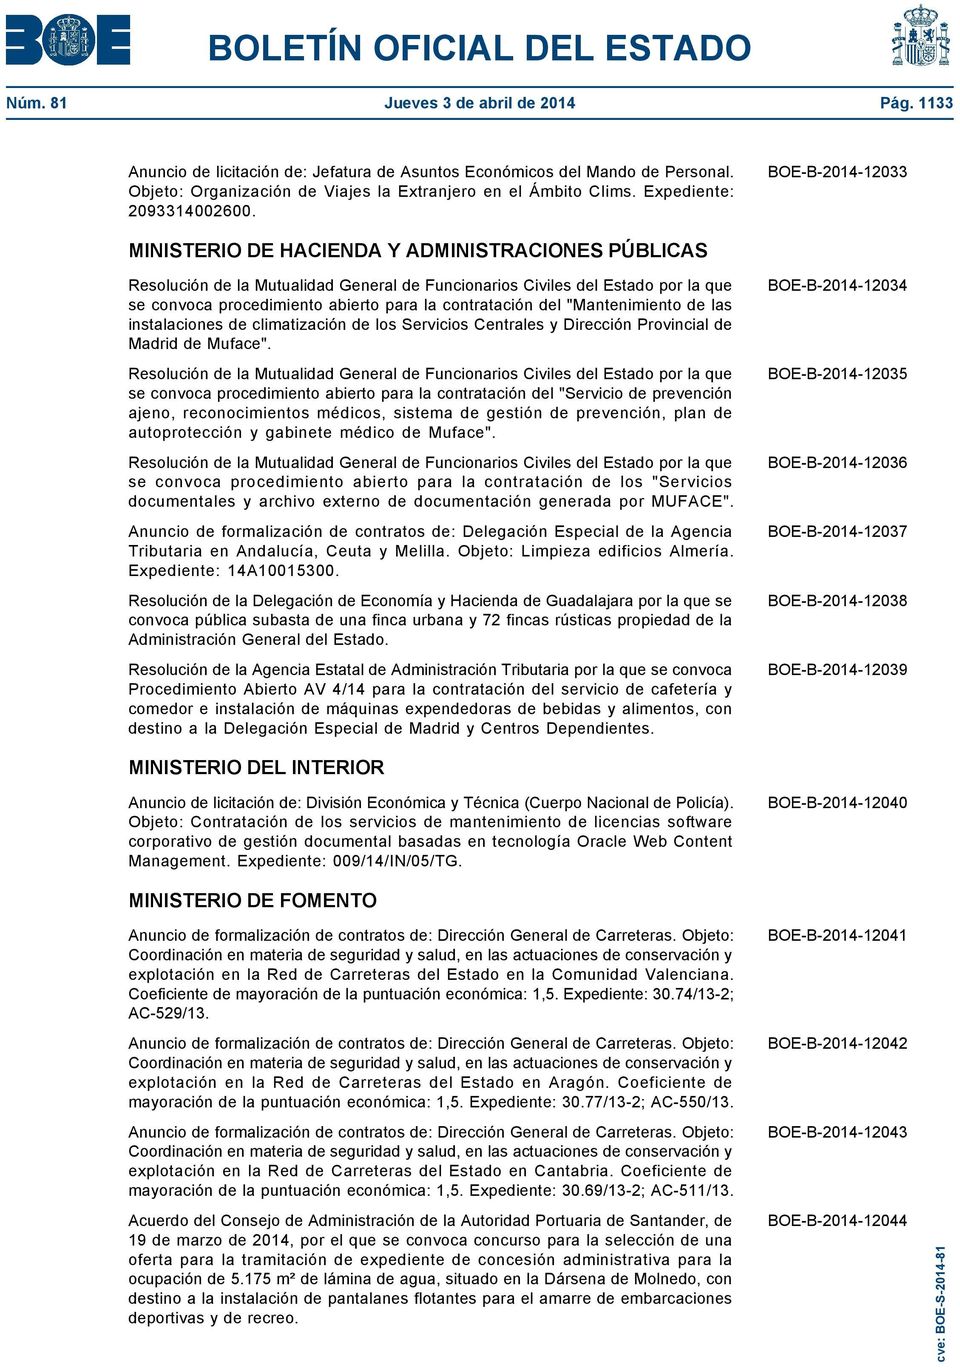 BOE-B-2014-12033 MINISTERIO DE HACIENDA Y ADMINISTRACIONES PÚBLICAS Resolución de la Mutualidad General de Funcionarios Civiles del Estado por la que se convoca procedimiento abierto para la